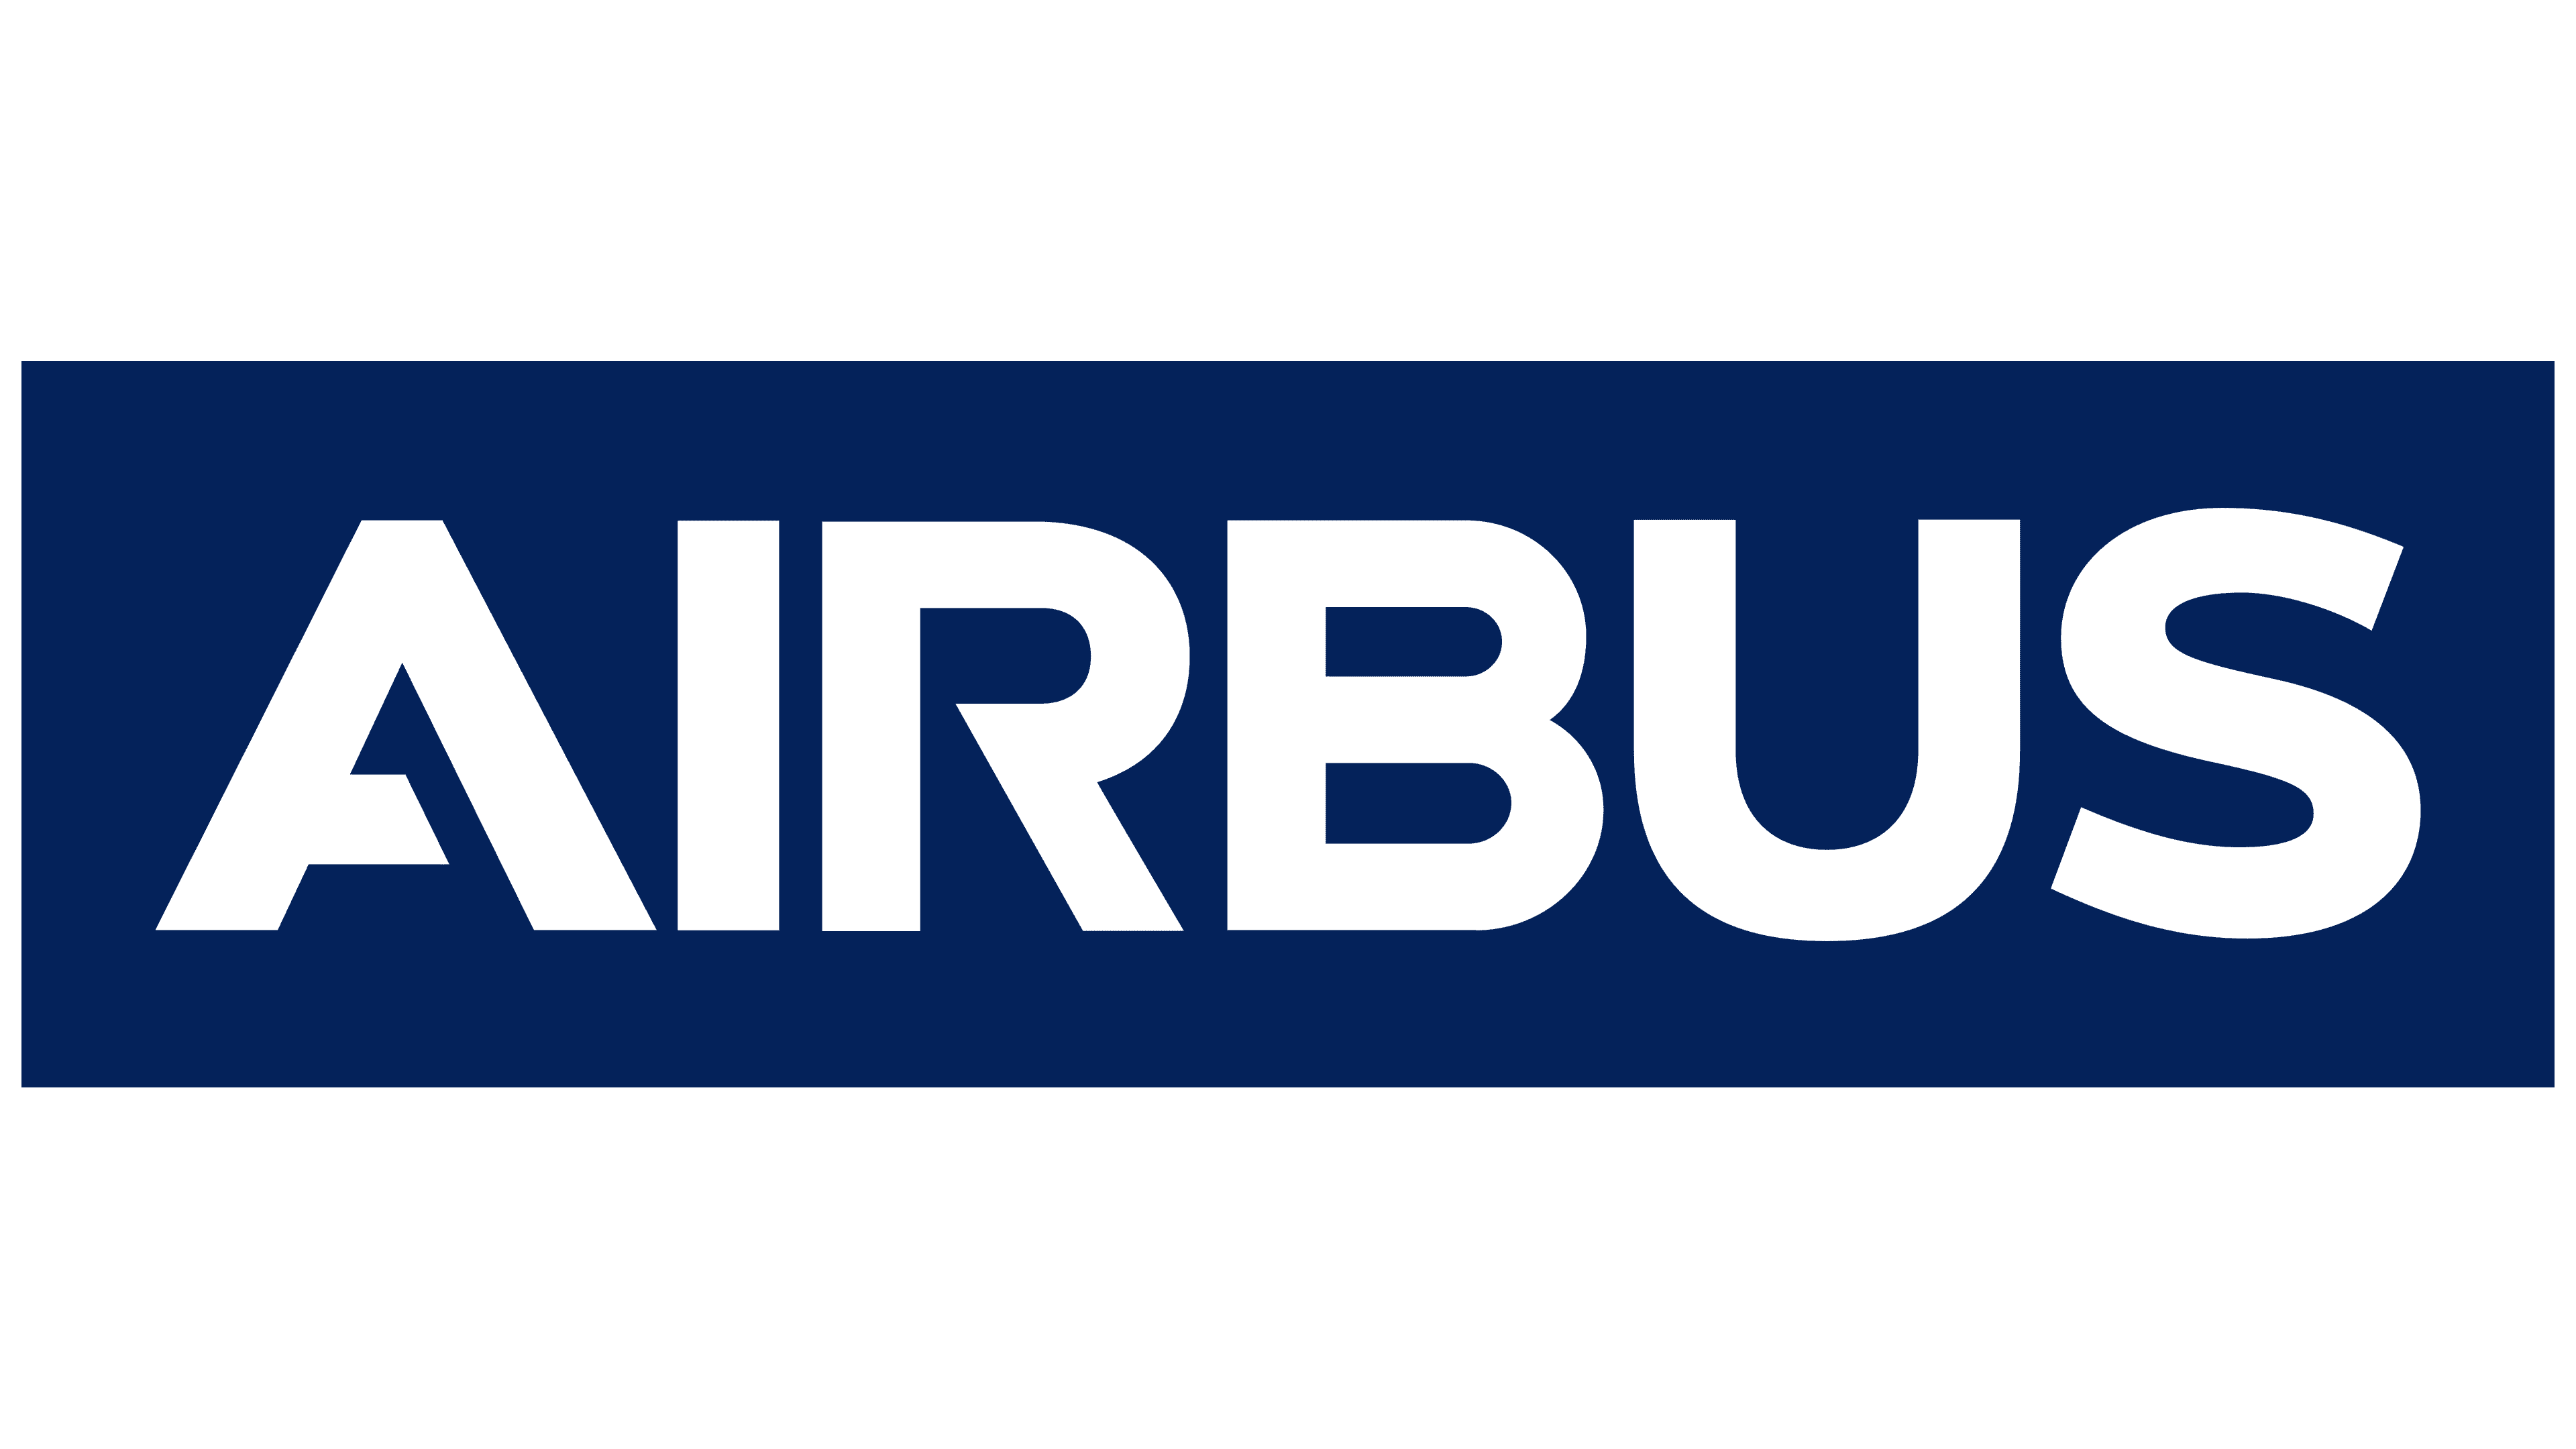 Airbus marking